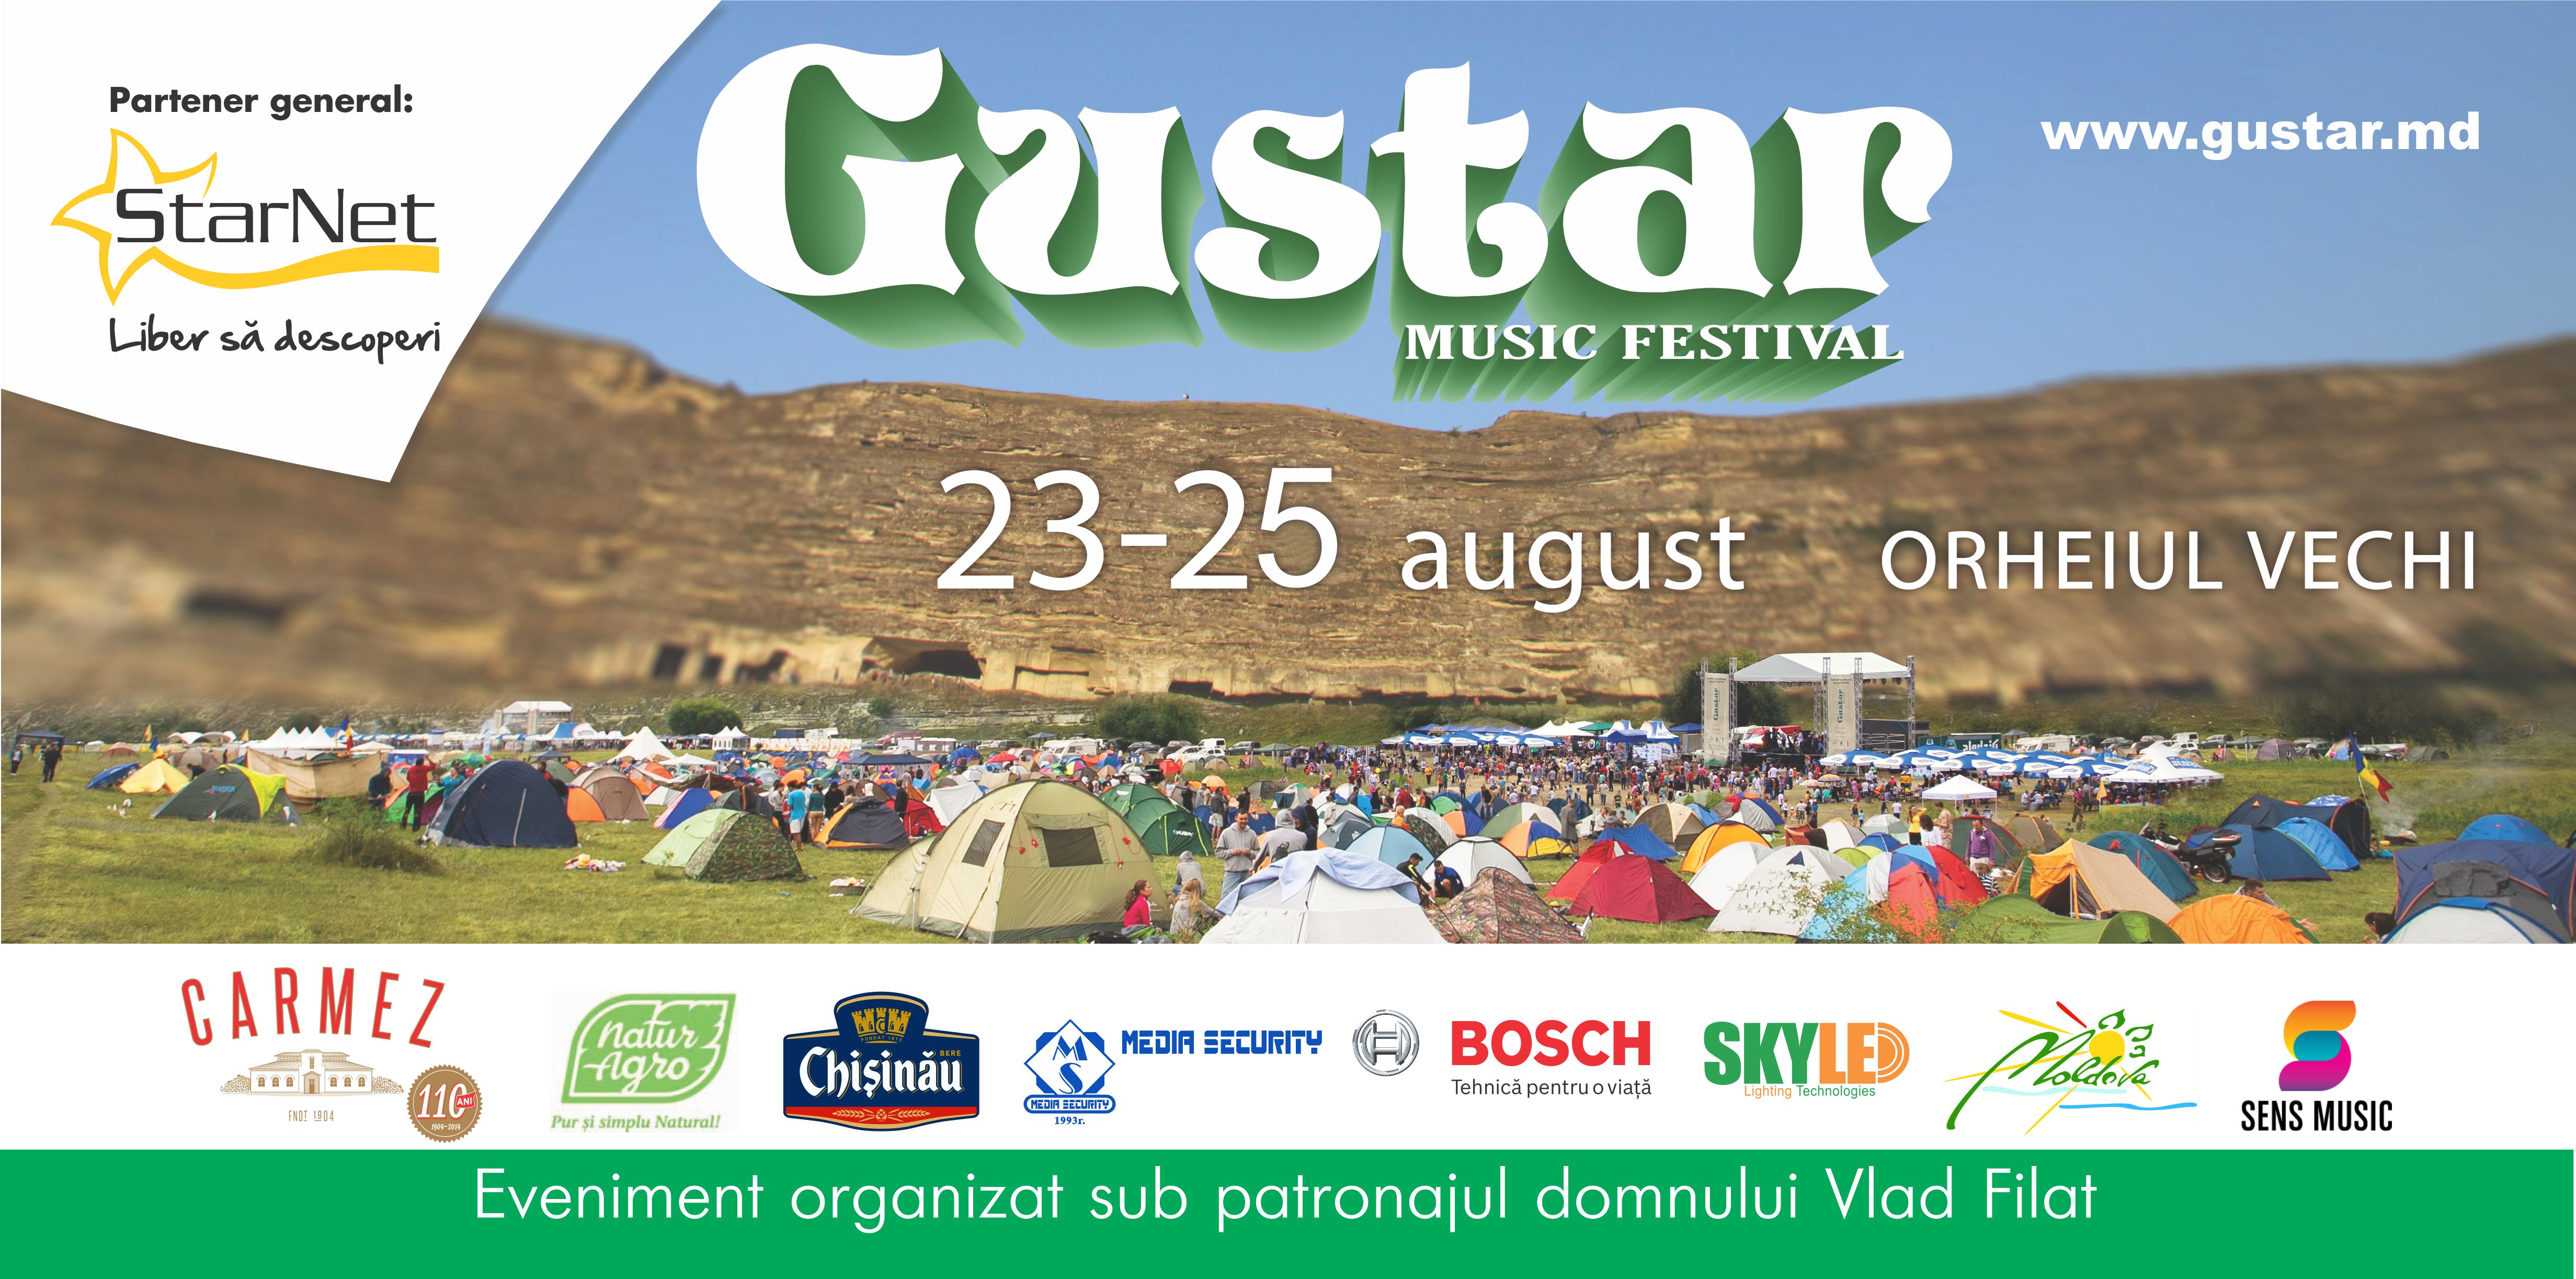 Festivalul Gustar 2014